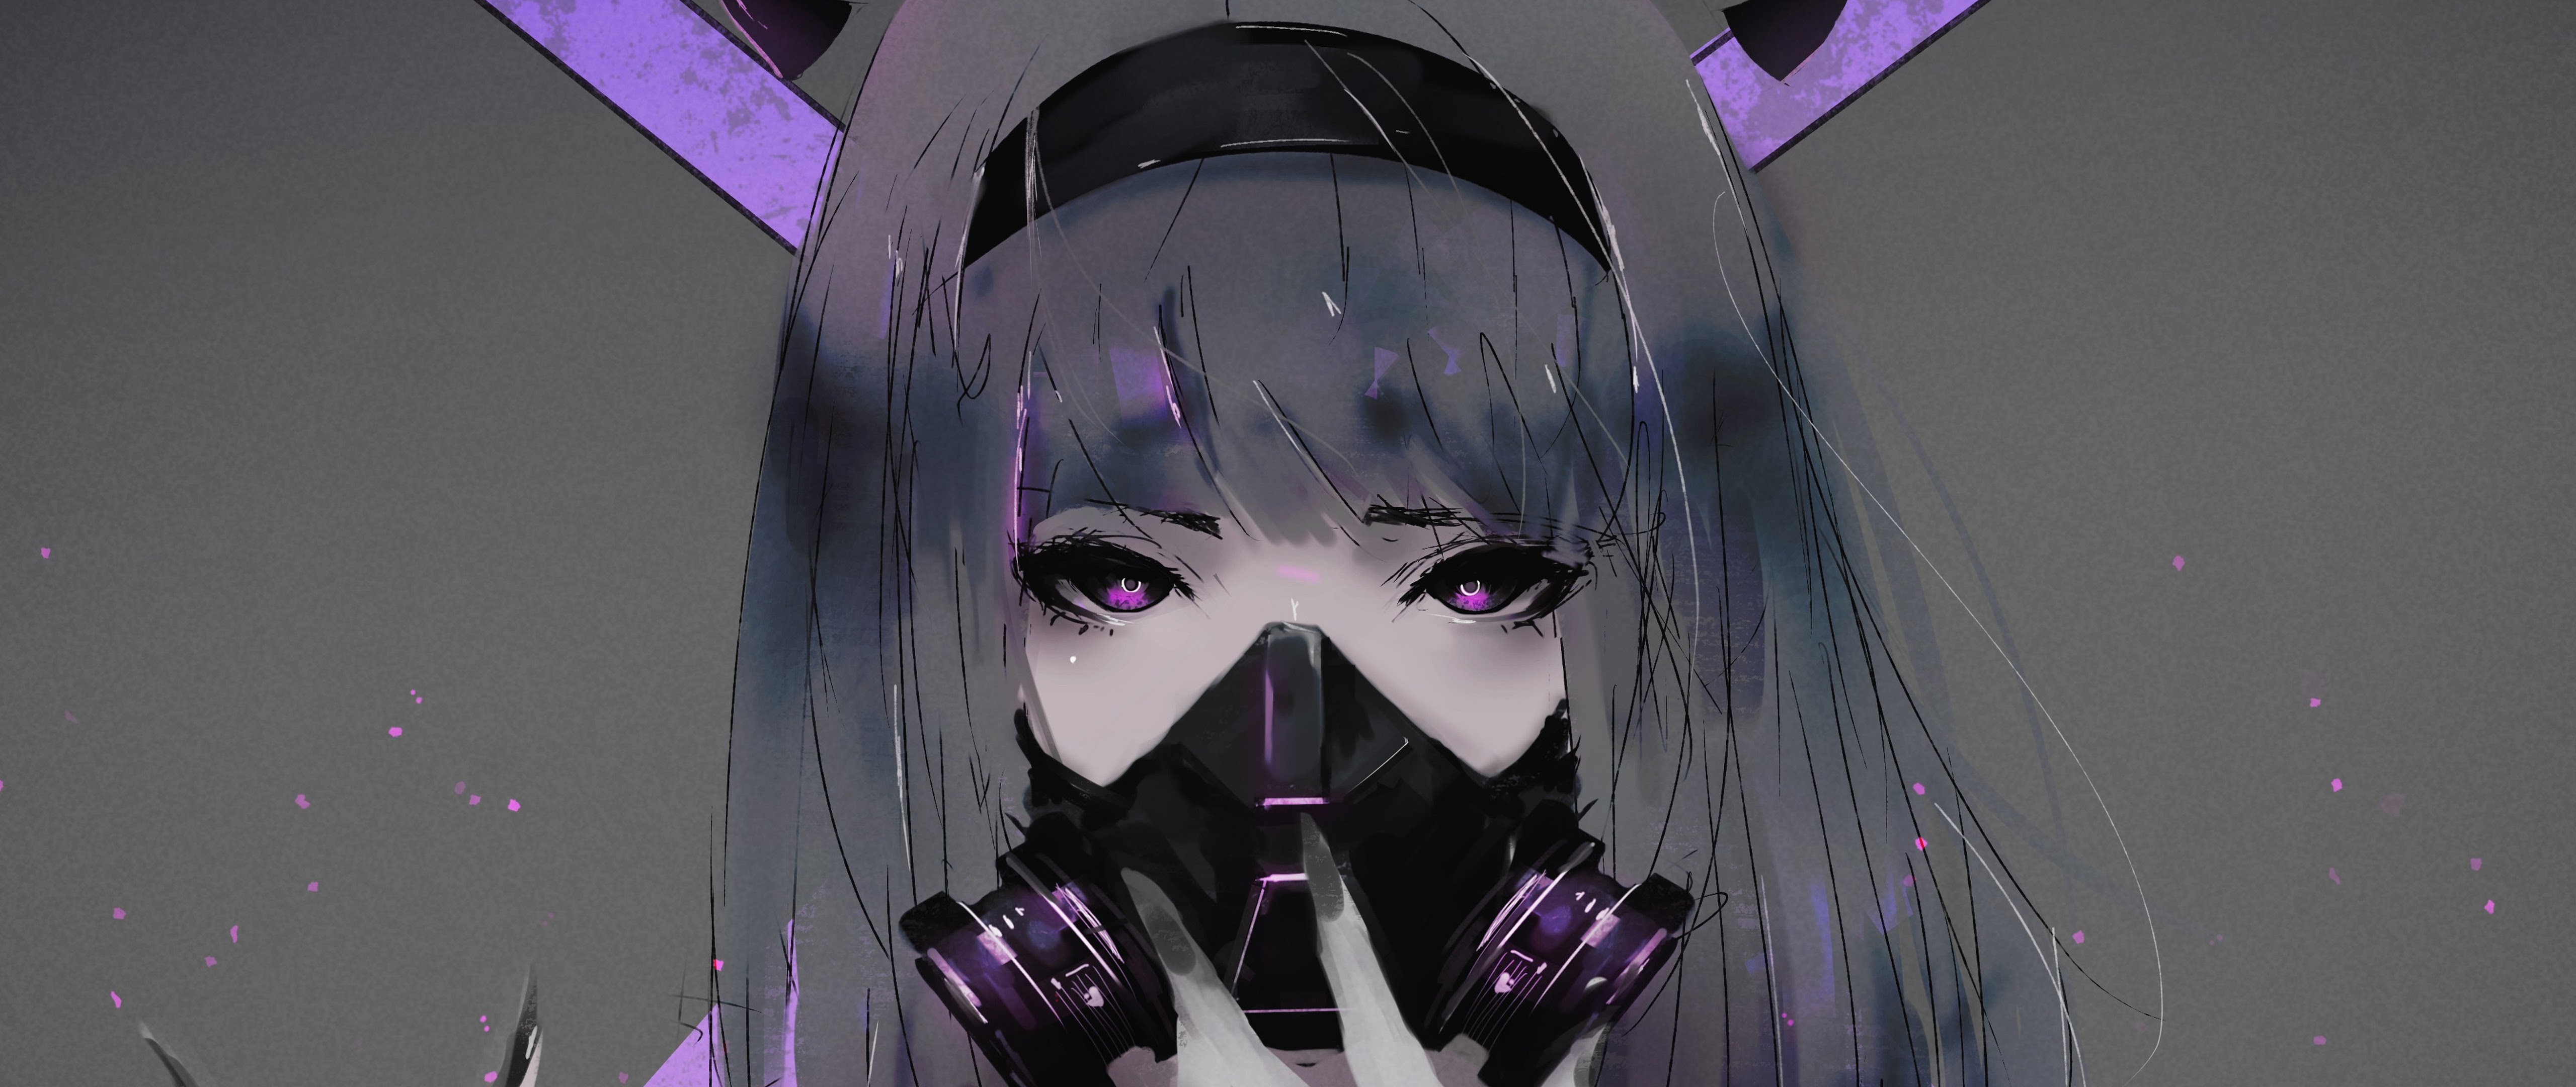 Anime Girl Gas Mask Wallpapers